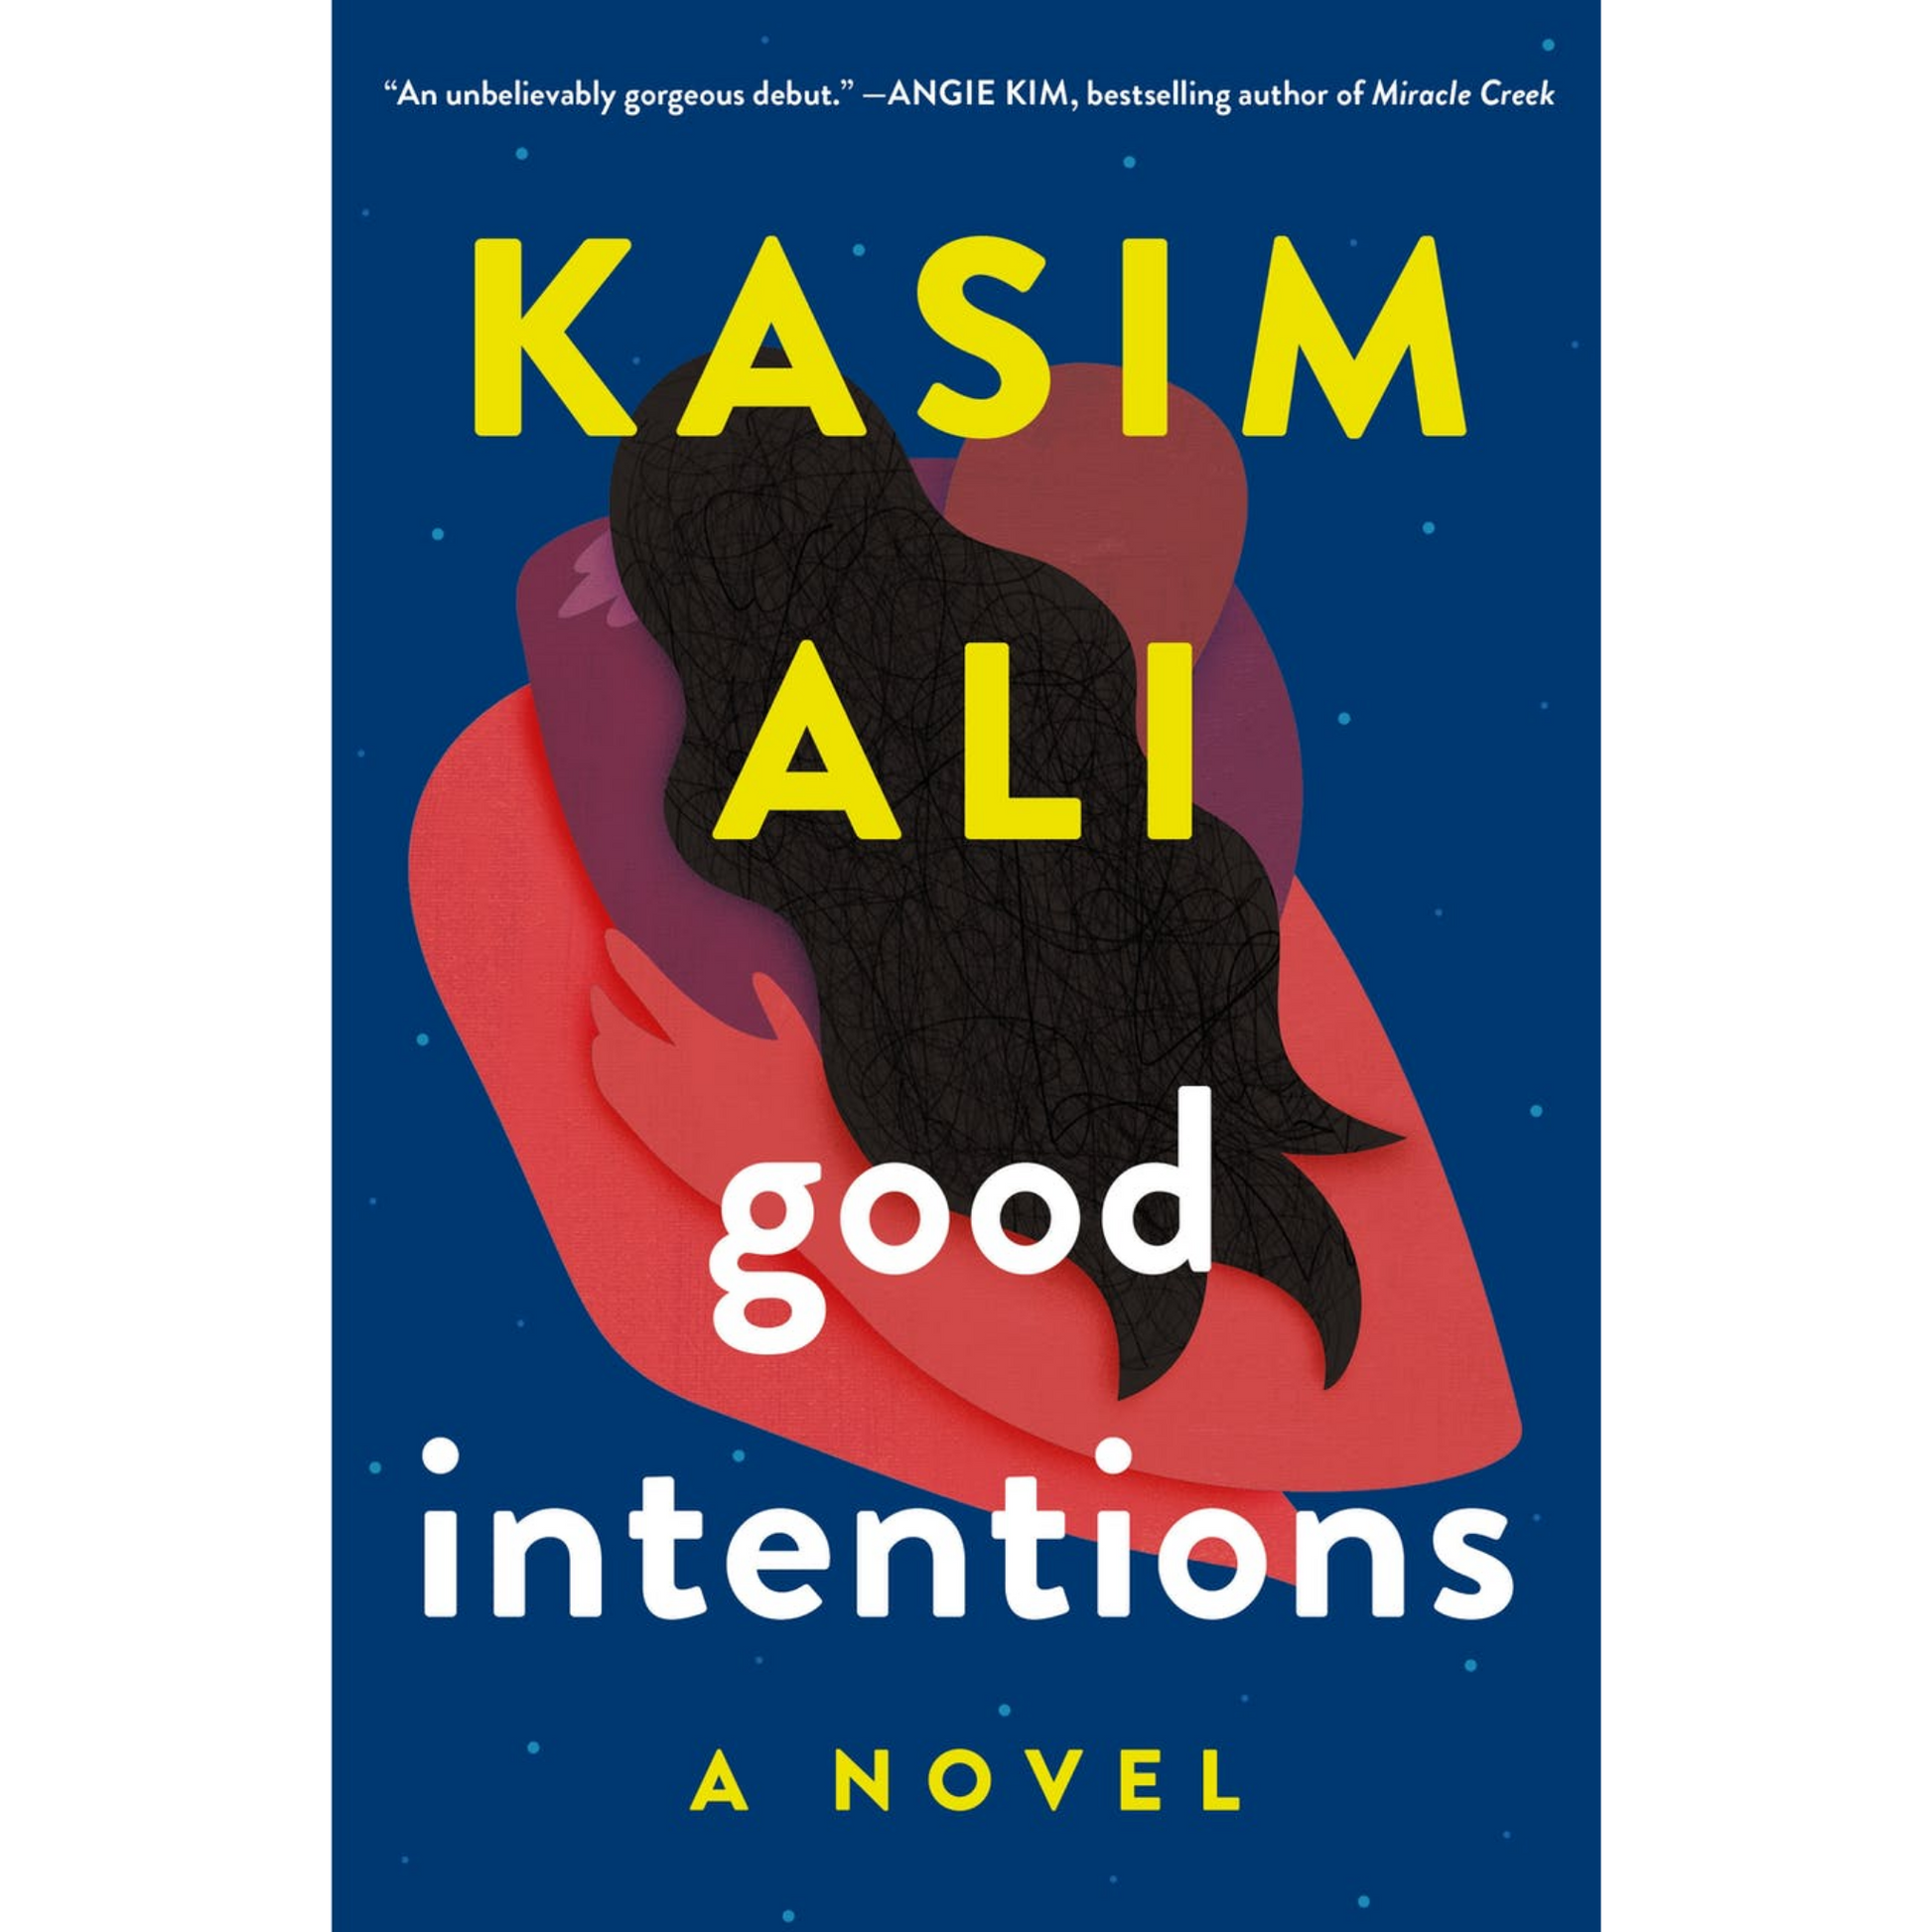 good intentions kasim ali